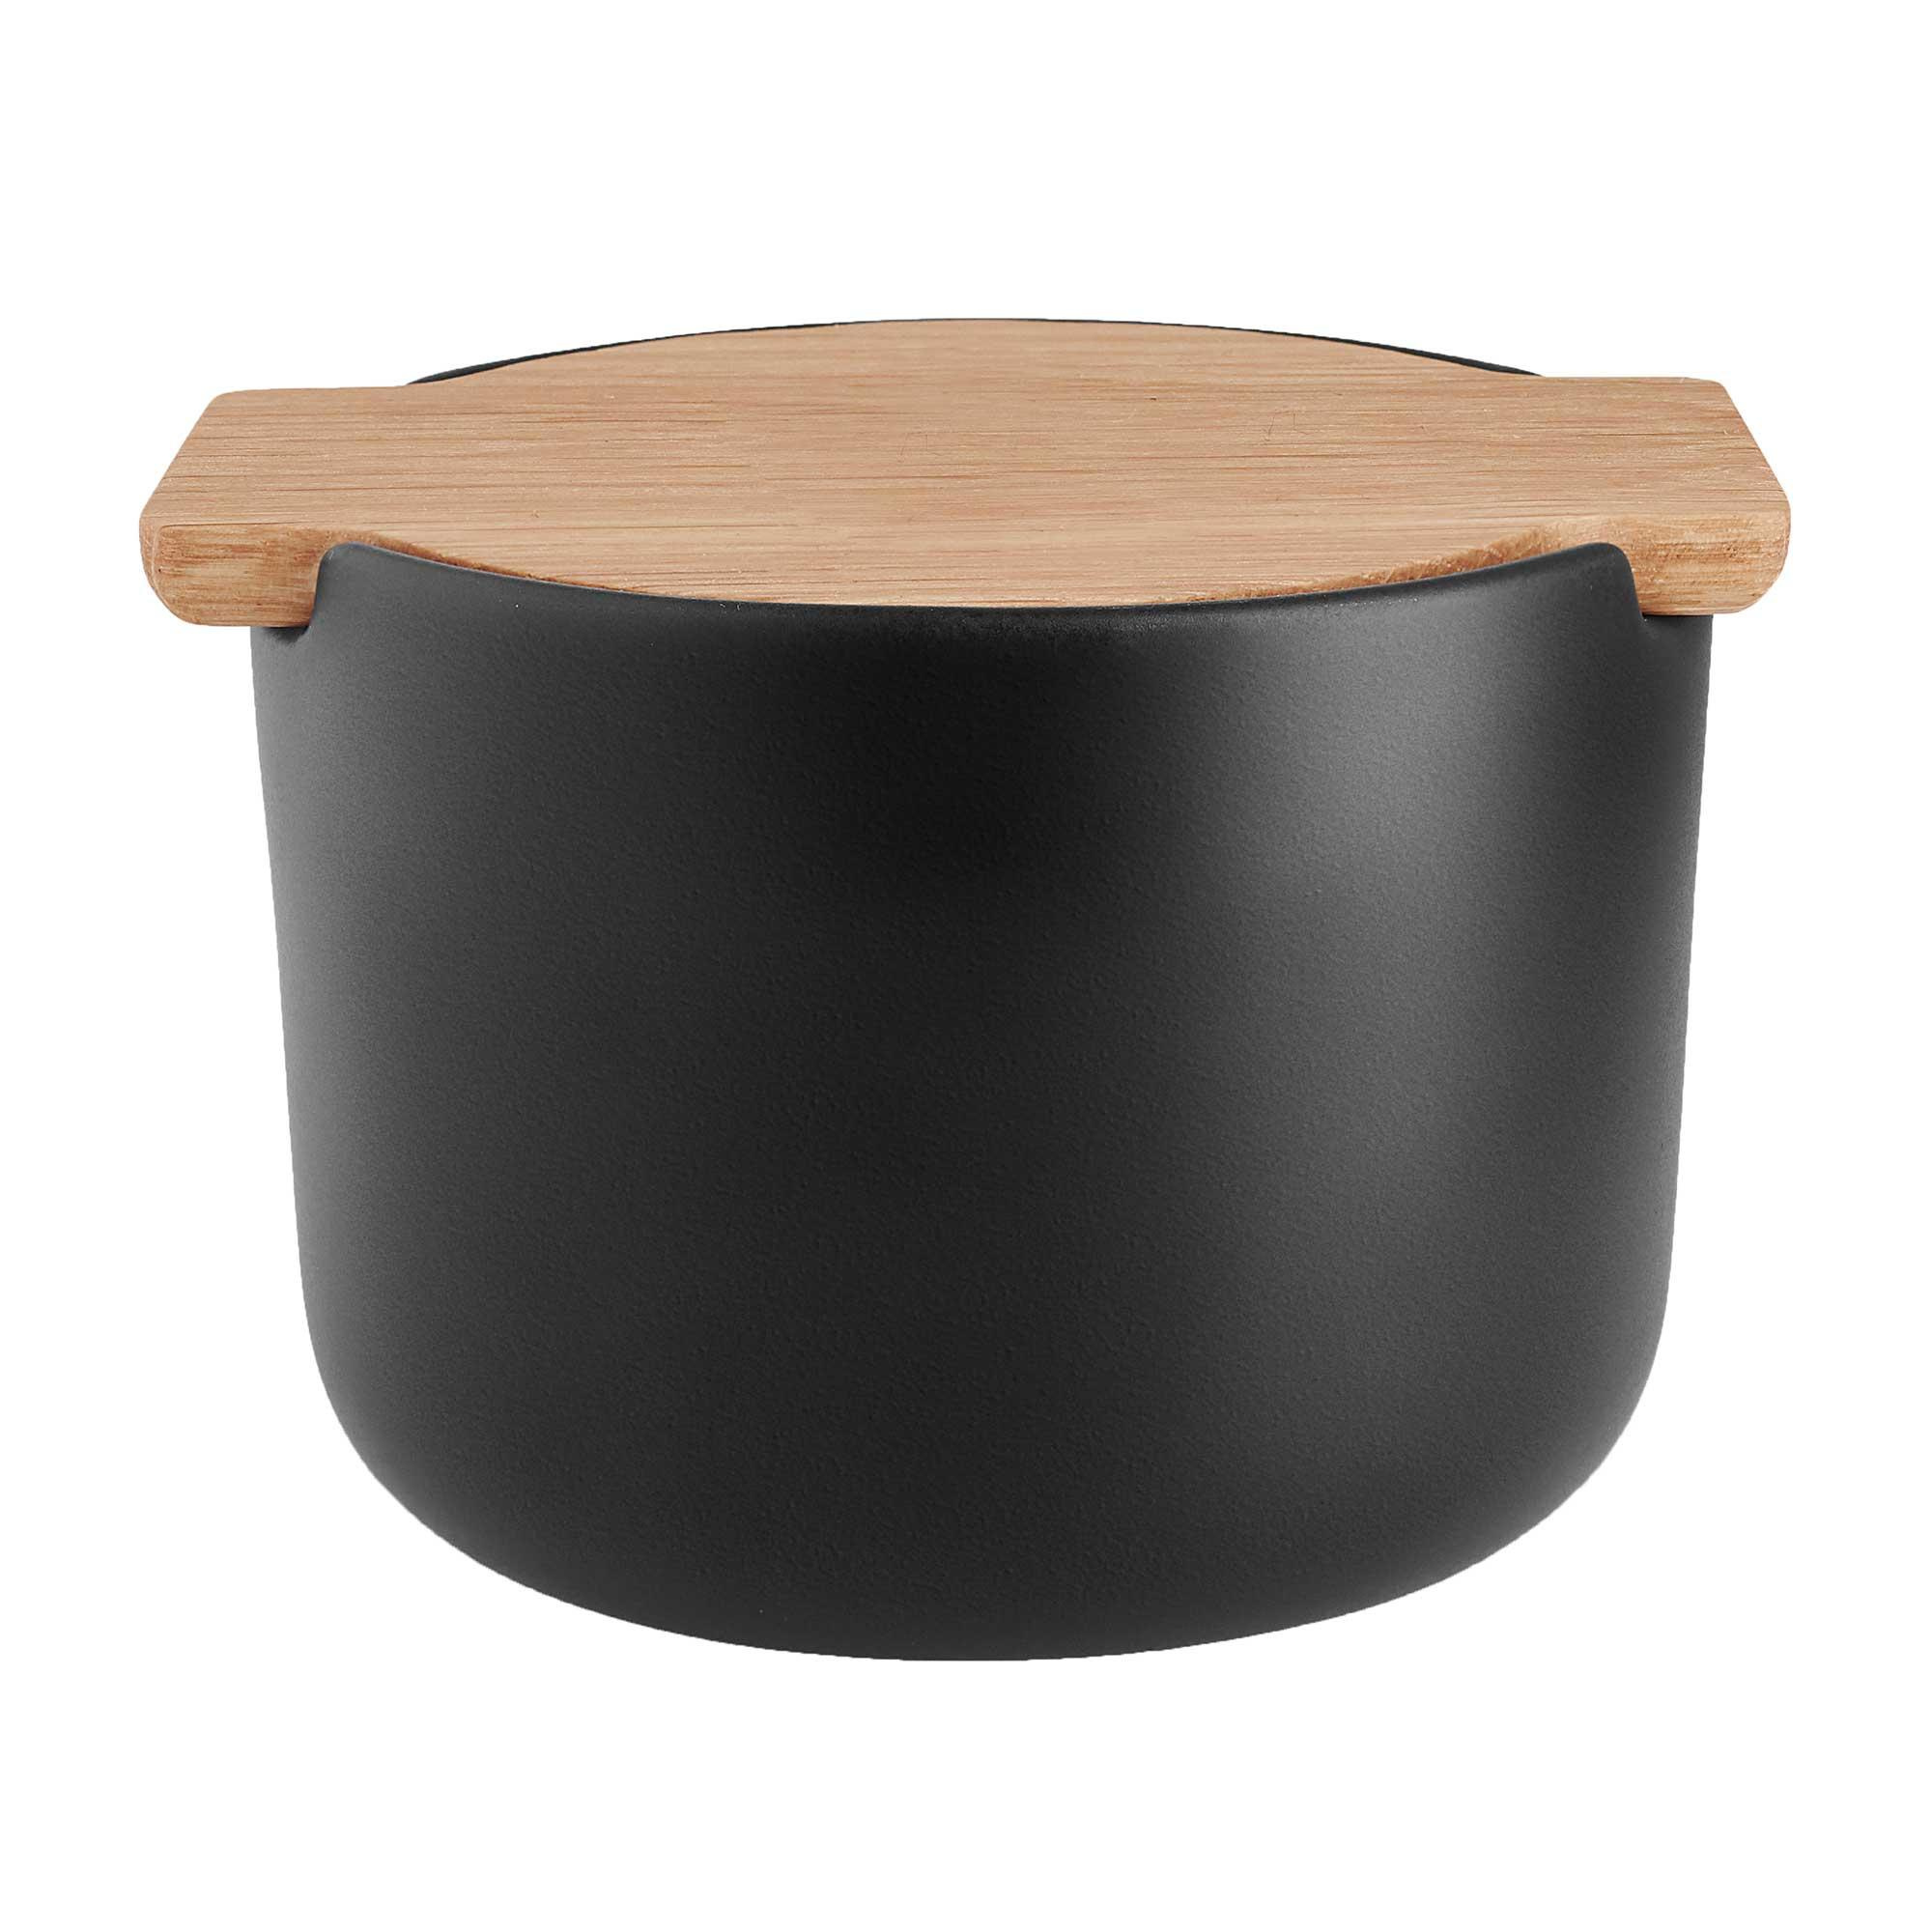 eva solo - pot de sel avec couvercle nordic kitchen - noir/lxlxh 11,4x10,4x7,7cm/couvercle en bois